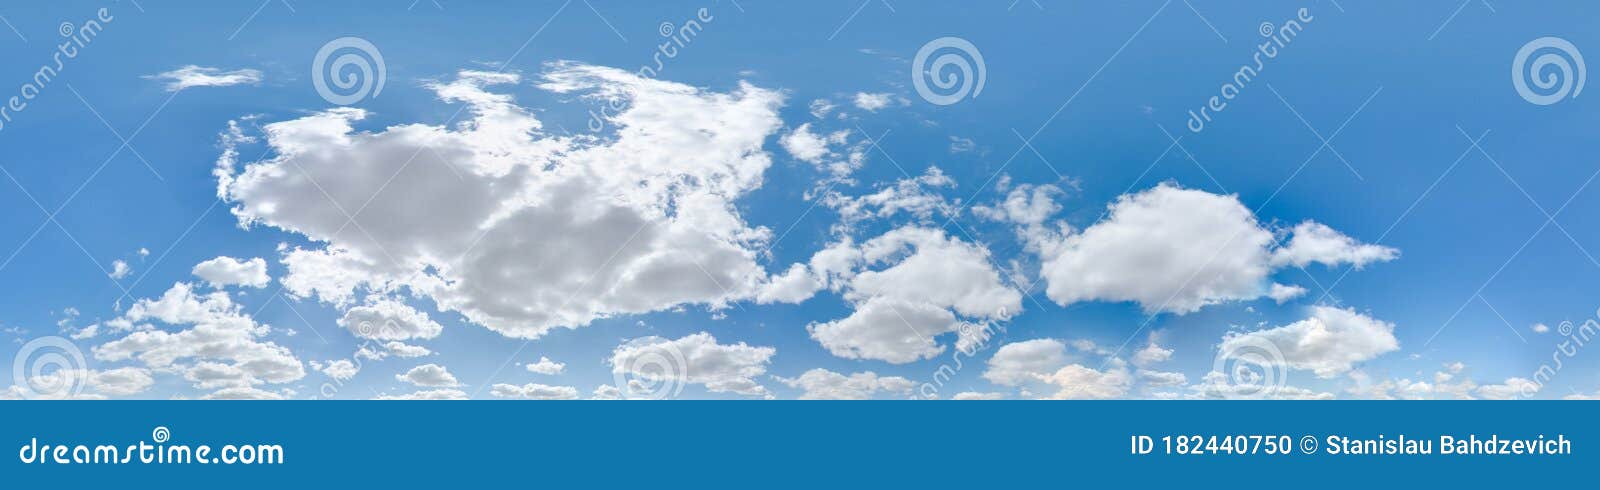 Bầu trời 360 độ với mây và mặt trời: Hãy mở rộng tầm mắt của bạn và thưởng thức toàn cảnh bầu trời 360 độ tuyệt đẹp với mây và mặt trời. Nắm bắt khoảnh khắc tuyệt đẹp của thiên nhiên, để lại hình ảnh bốn mùa trong lòng và tận hưởng cảm giác tuyệt vời này.